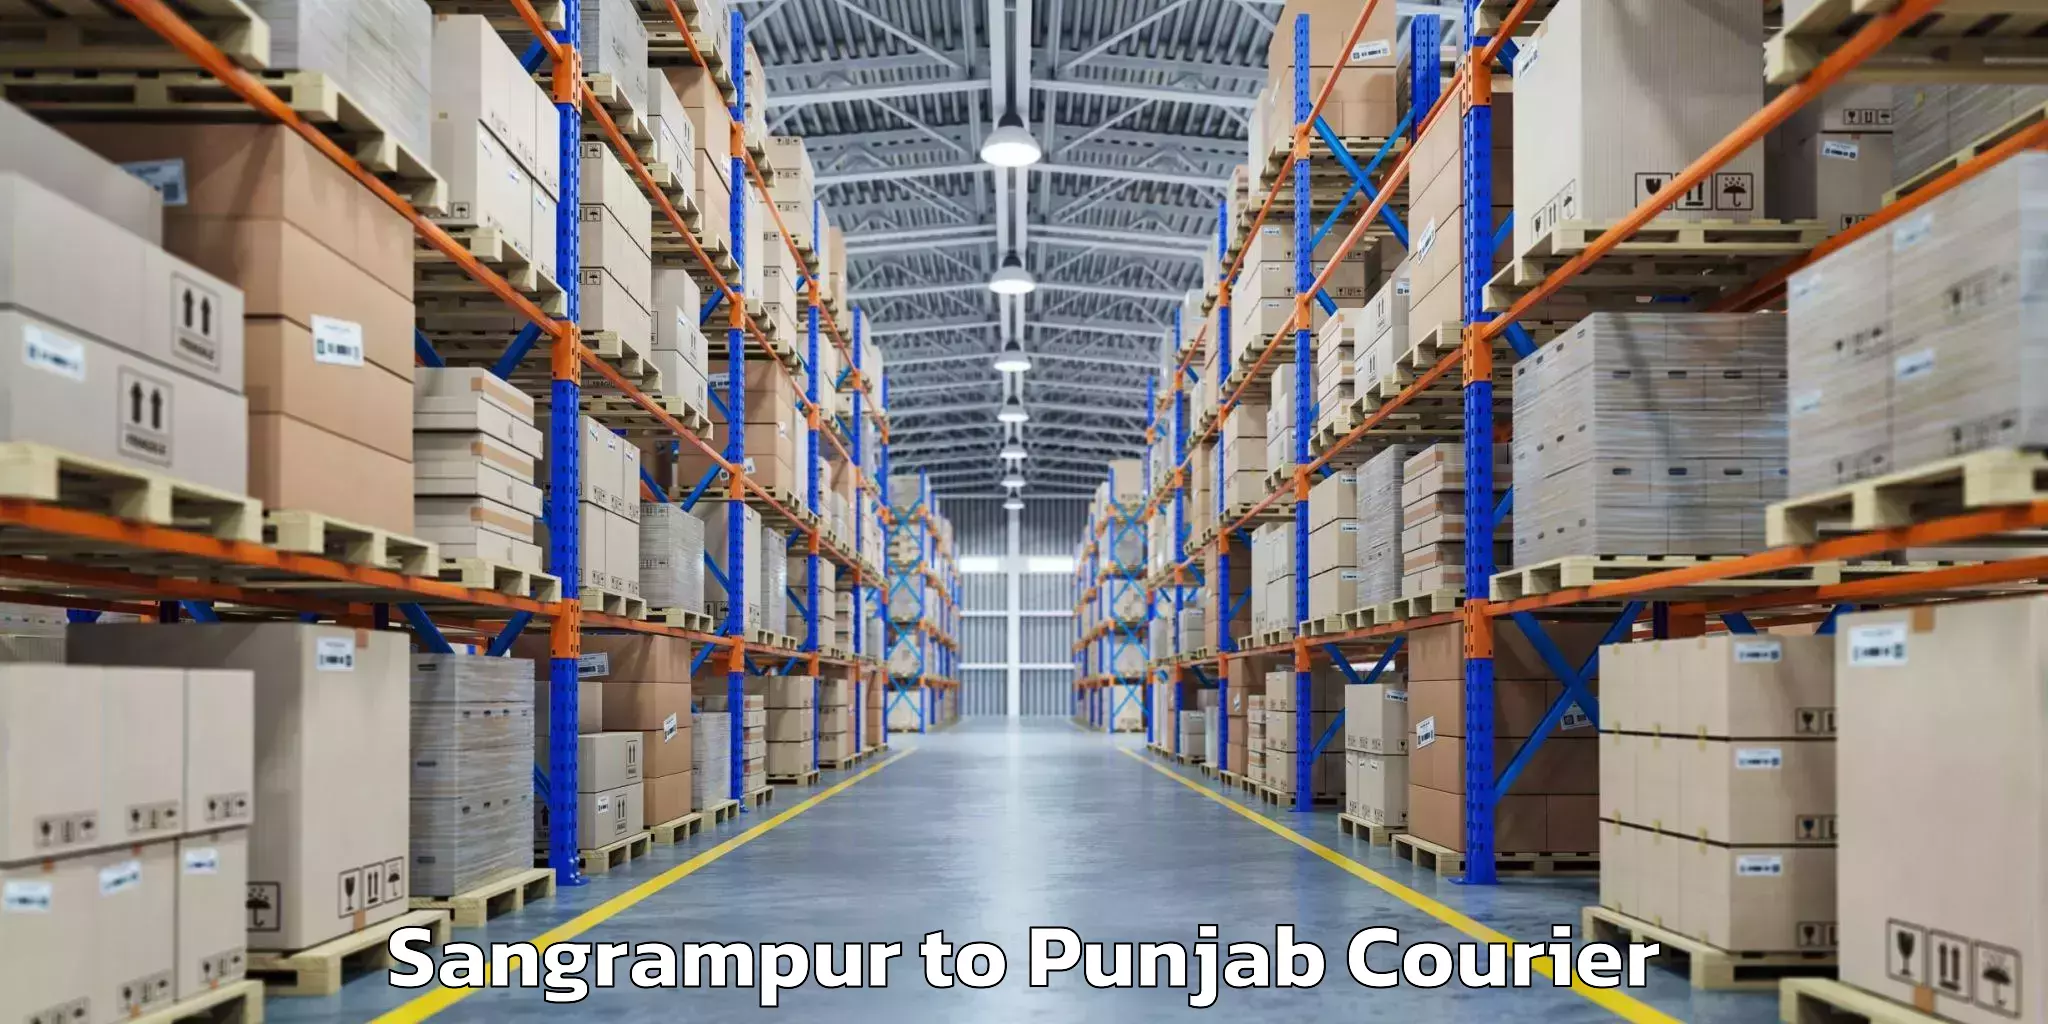 Overnight baggage shipping Sangrampur to Punjab